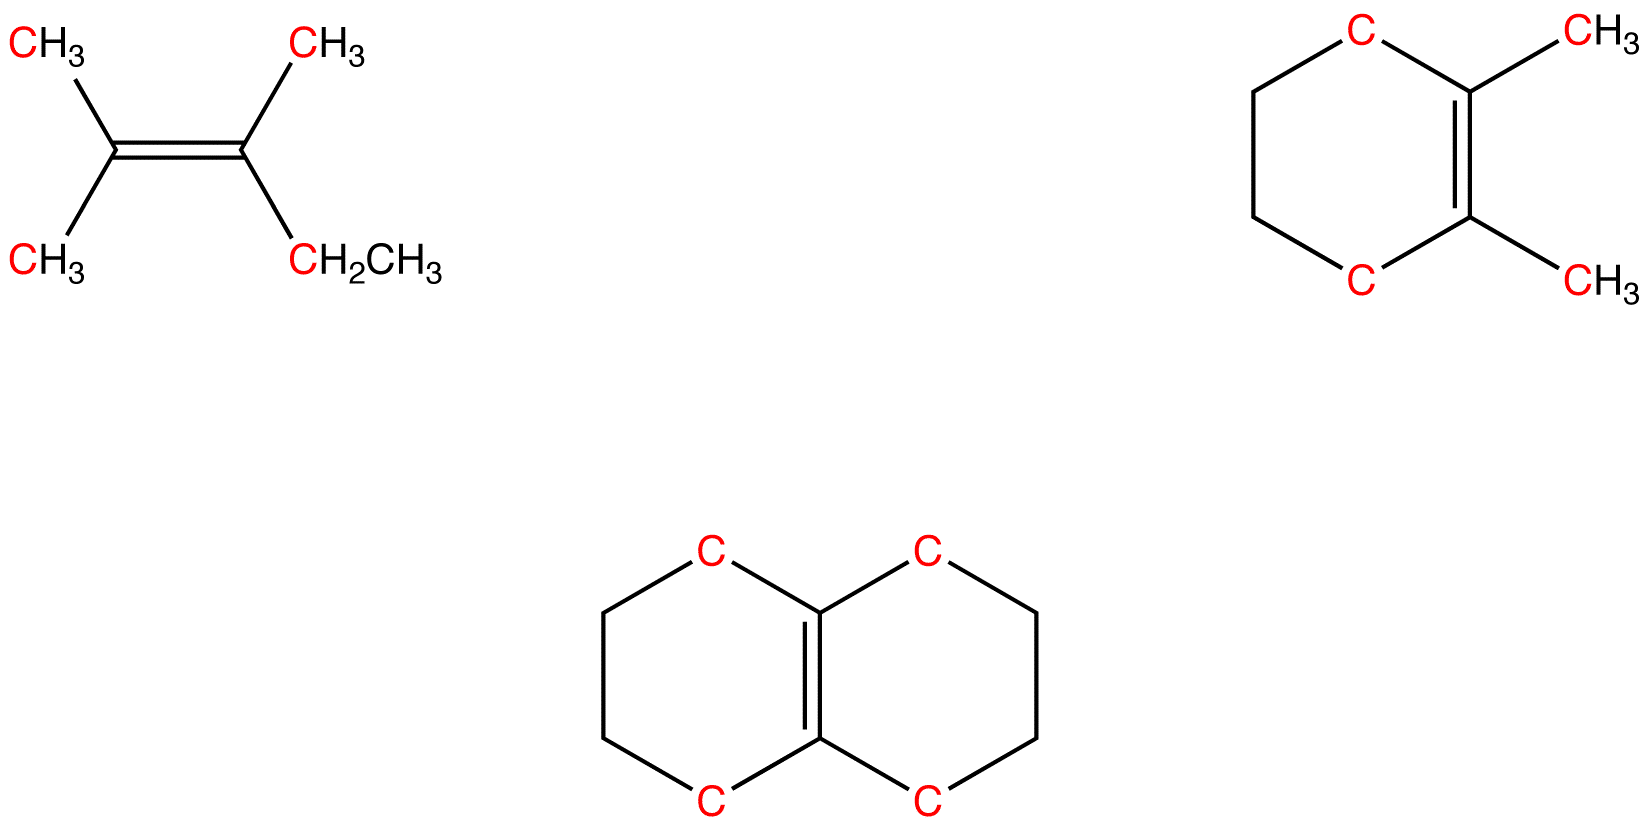 tetrasubstitutedalkene.png